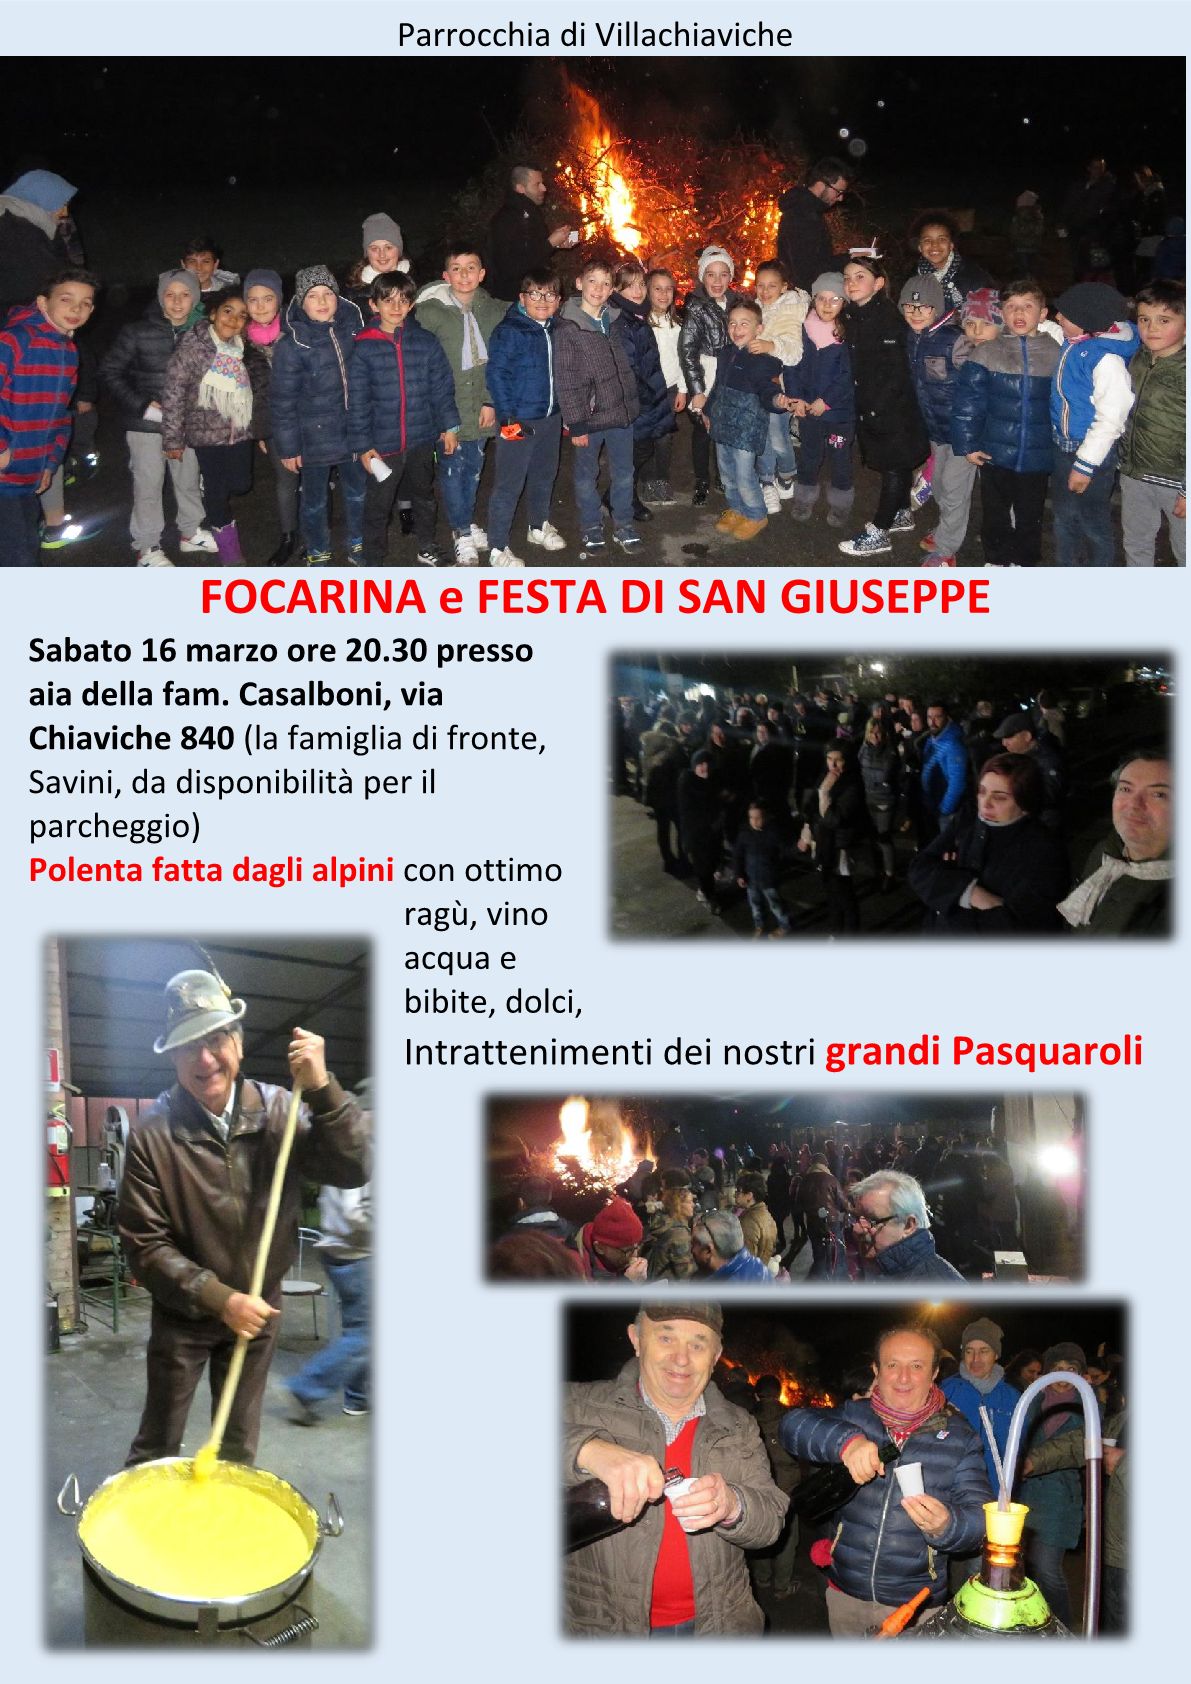 16/03/2019 - Focarina e Festa di San Giuseppe